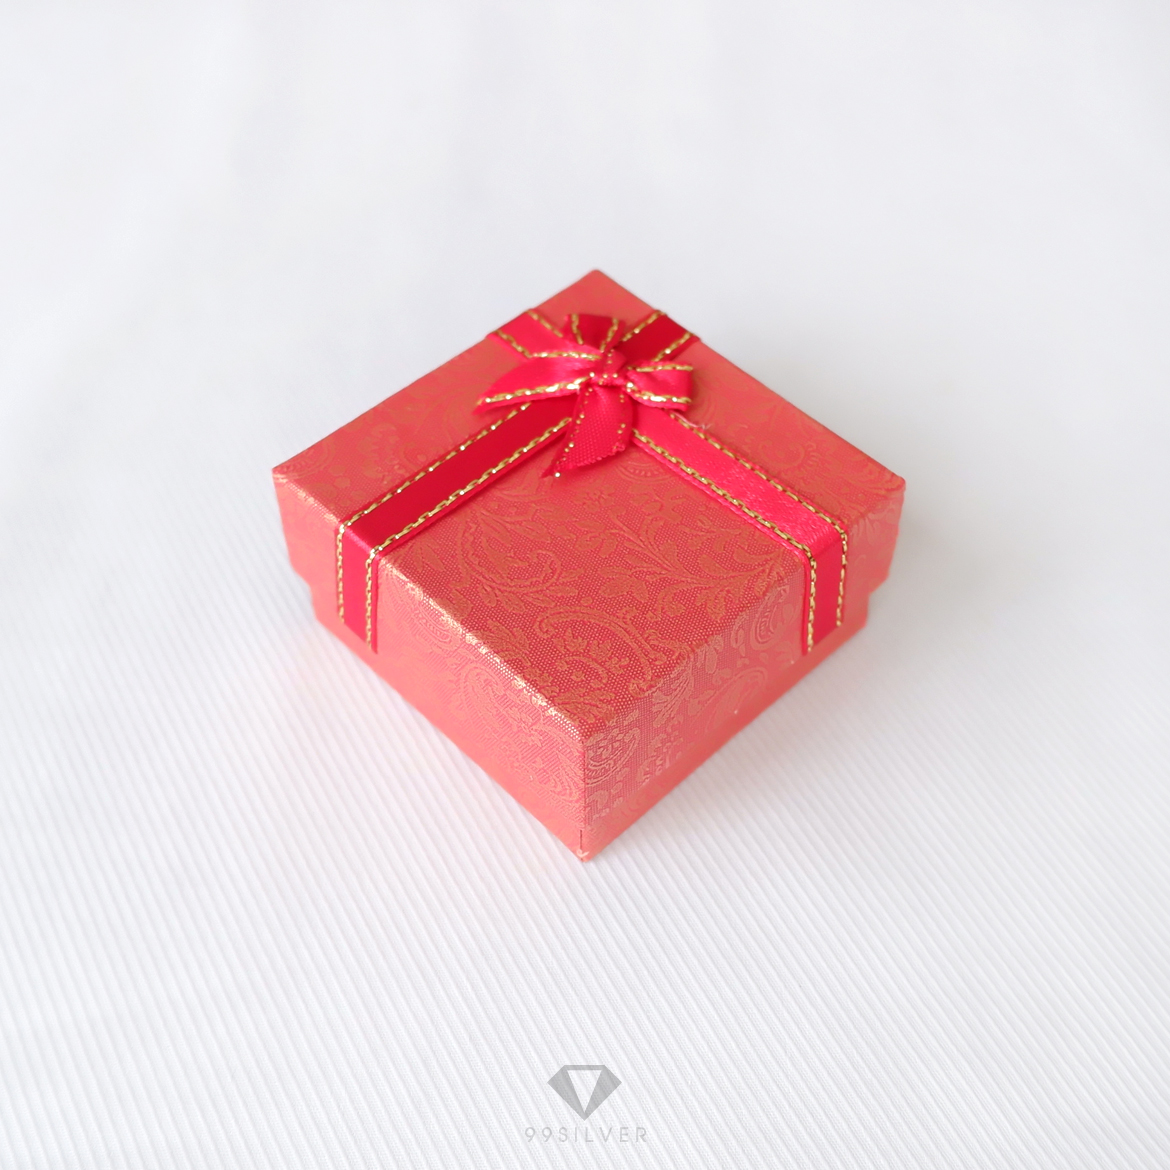 กล่องใส่แหวนสีแดงสี่เหลี่ยม มีโบว์ ข้างในบุด้วยสปั้นช์นิ่มสีขาว